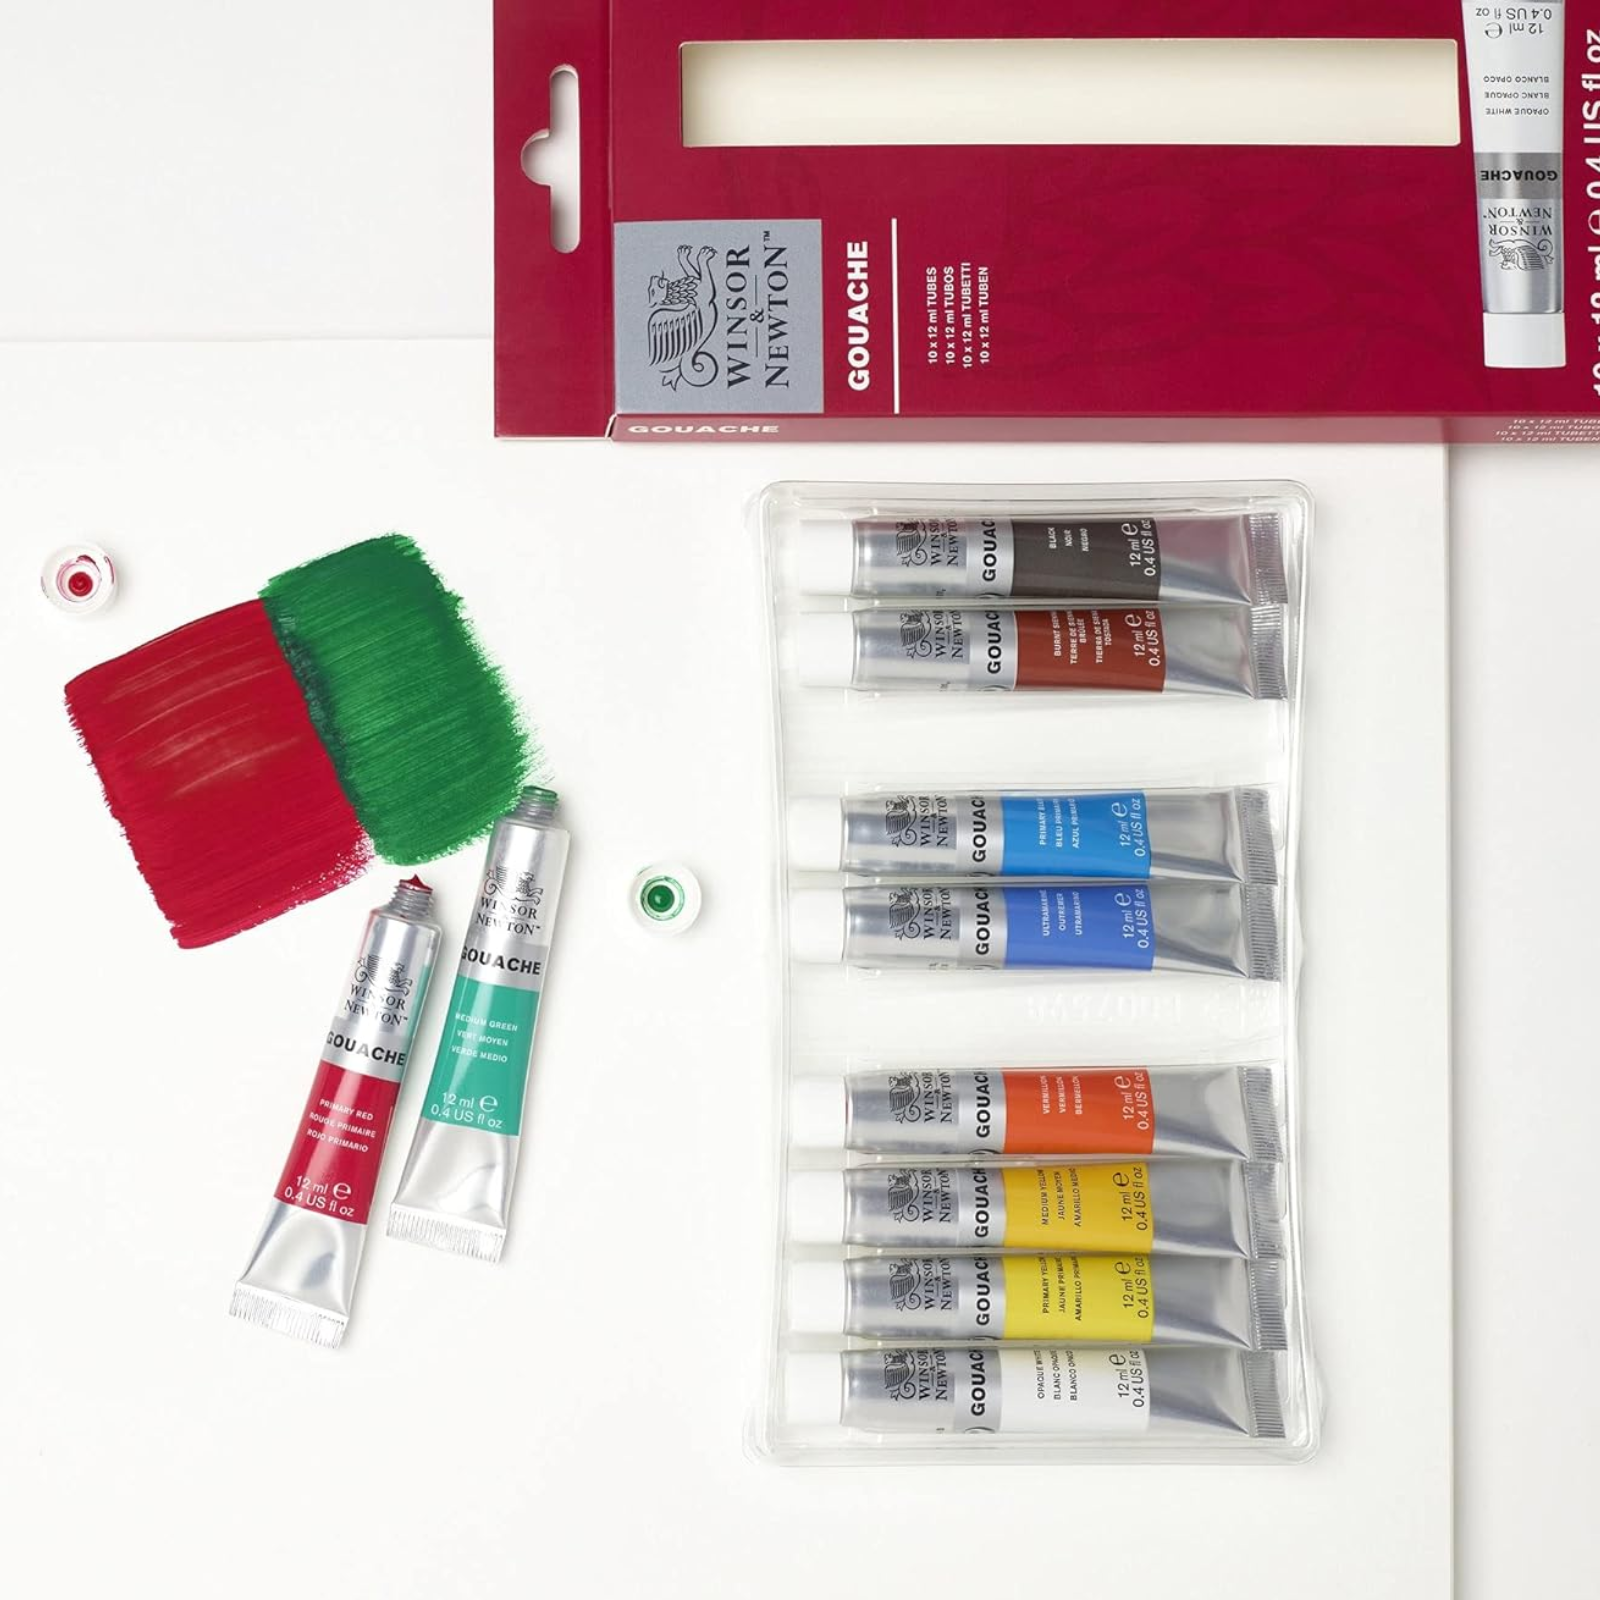 Winsor & Newton Gouache Primary Colour Set, 12ml, 10 Colours - allows for precise, continous flow of paint